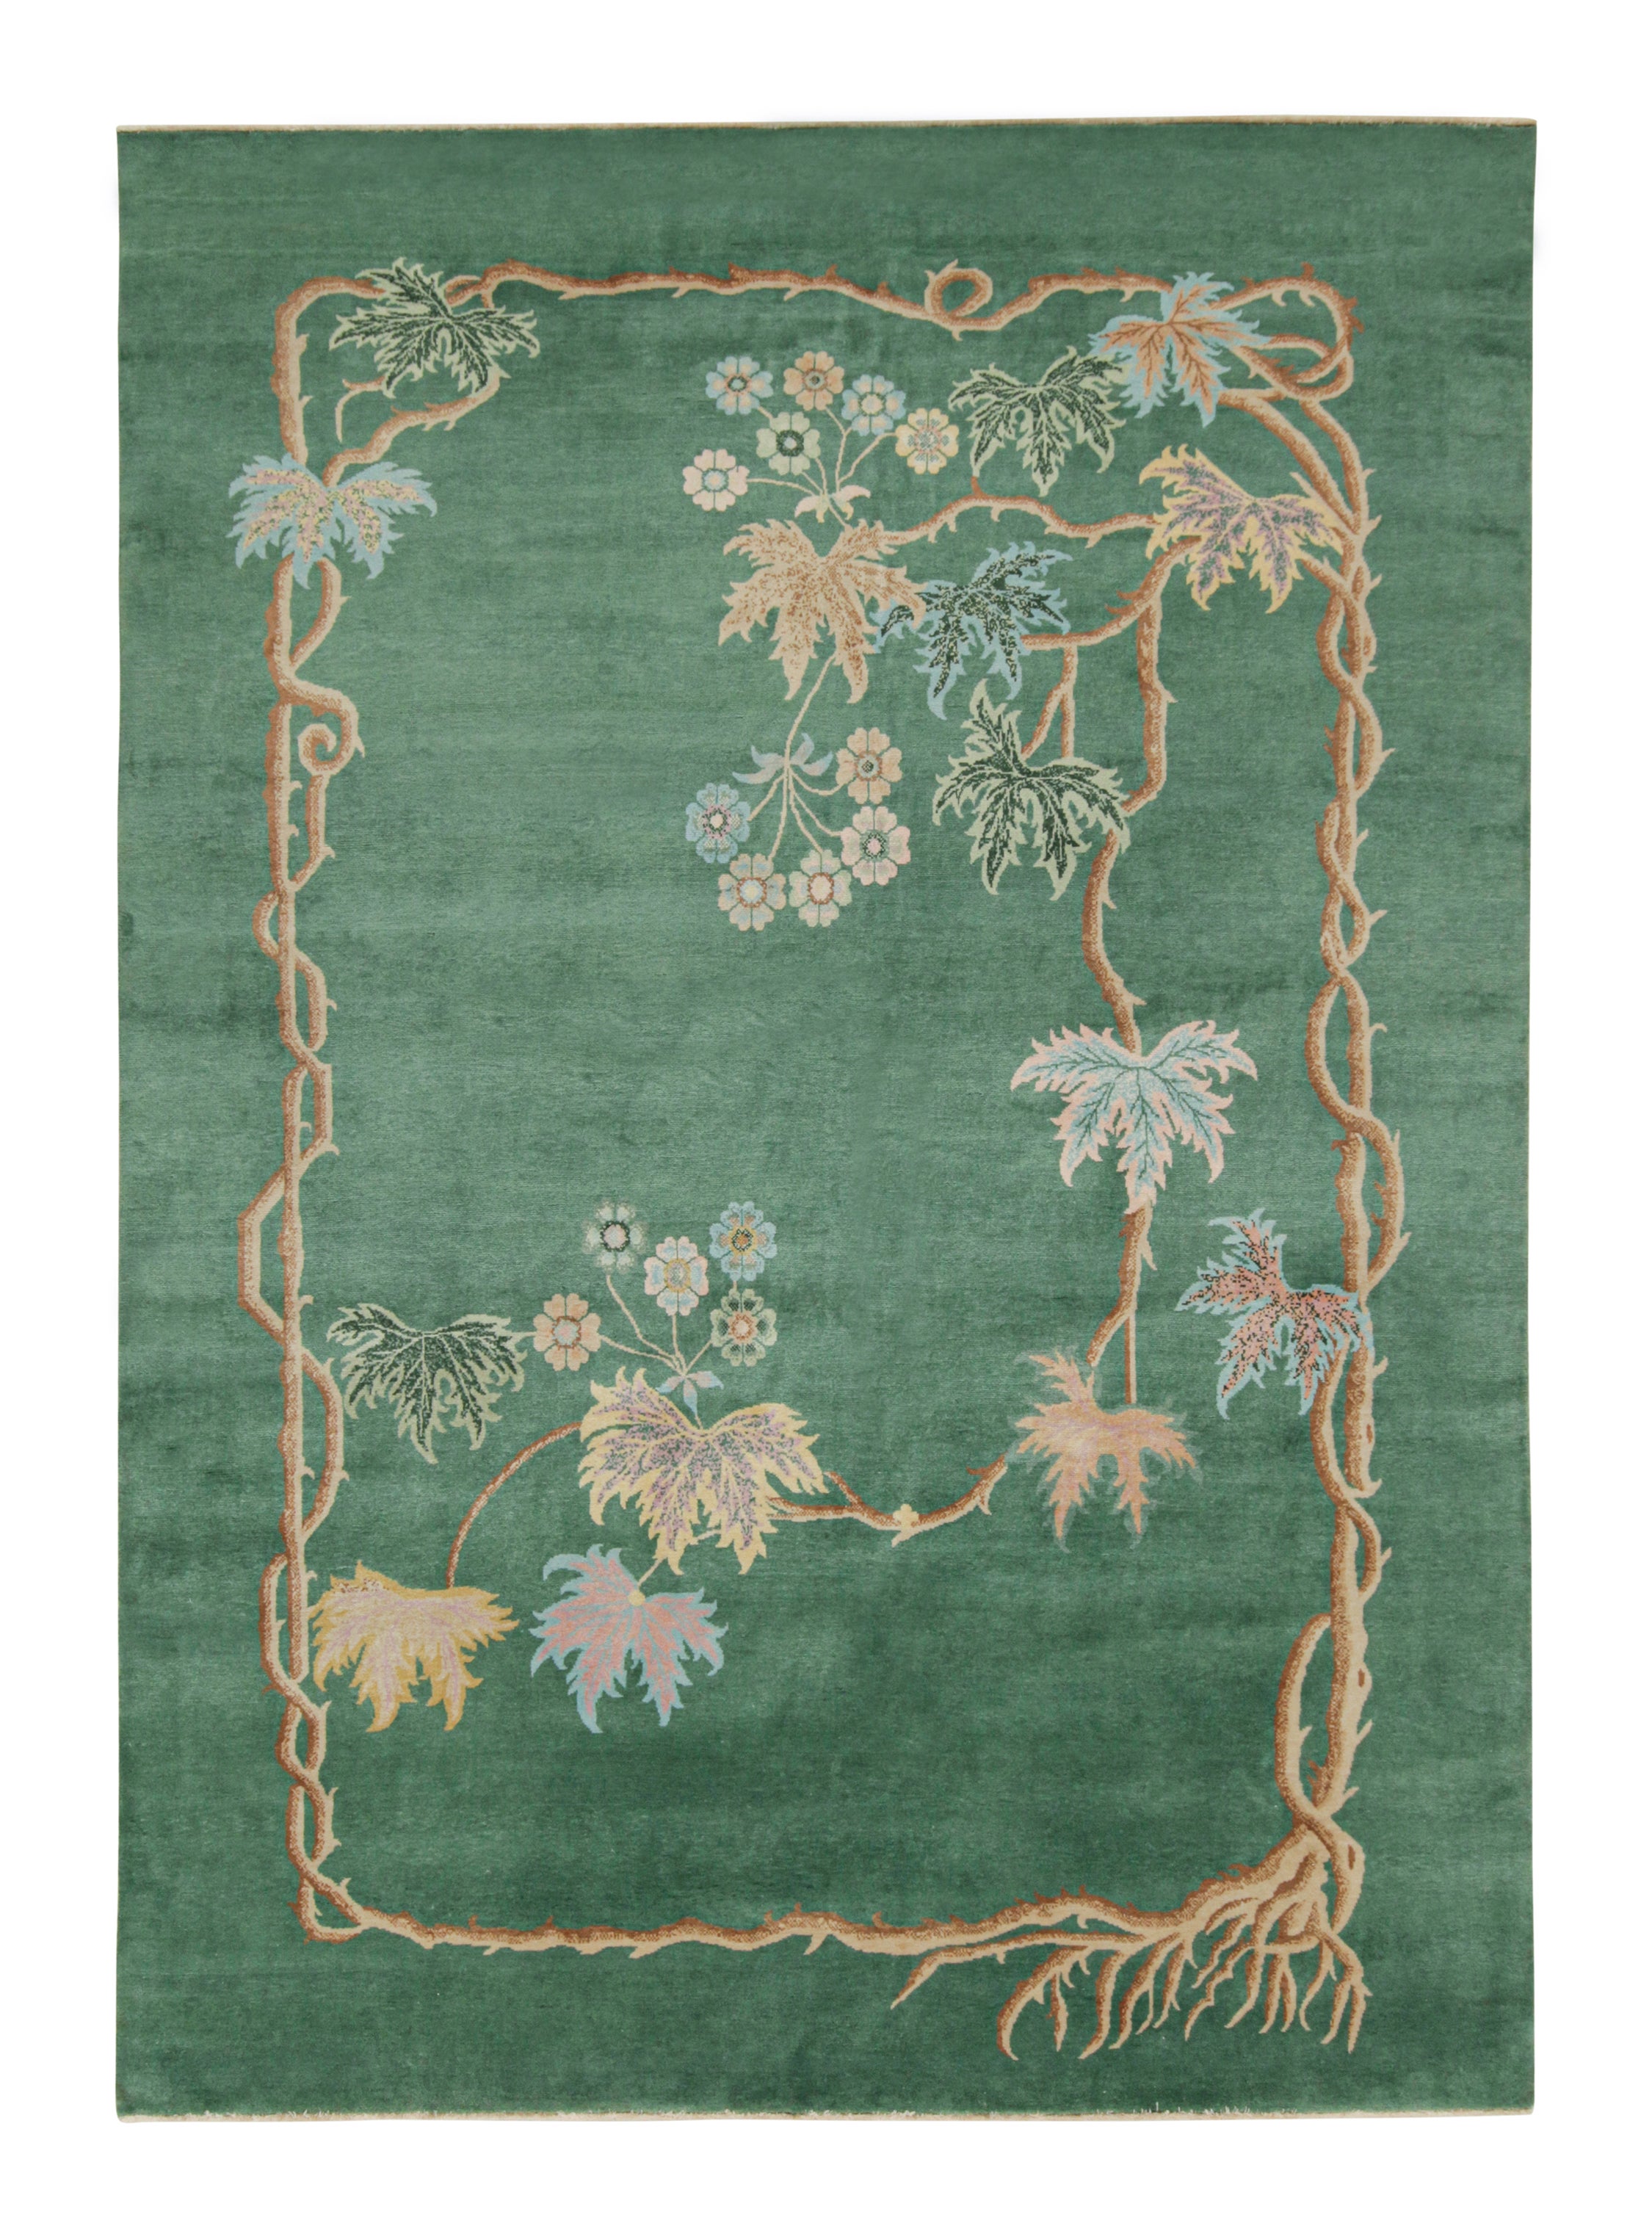 Chinesischer Teppich im Art-déco-Stil von Teppich & Kilim''s in Grün mit Blumenmuster